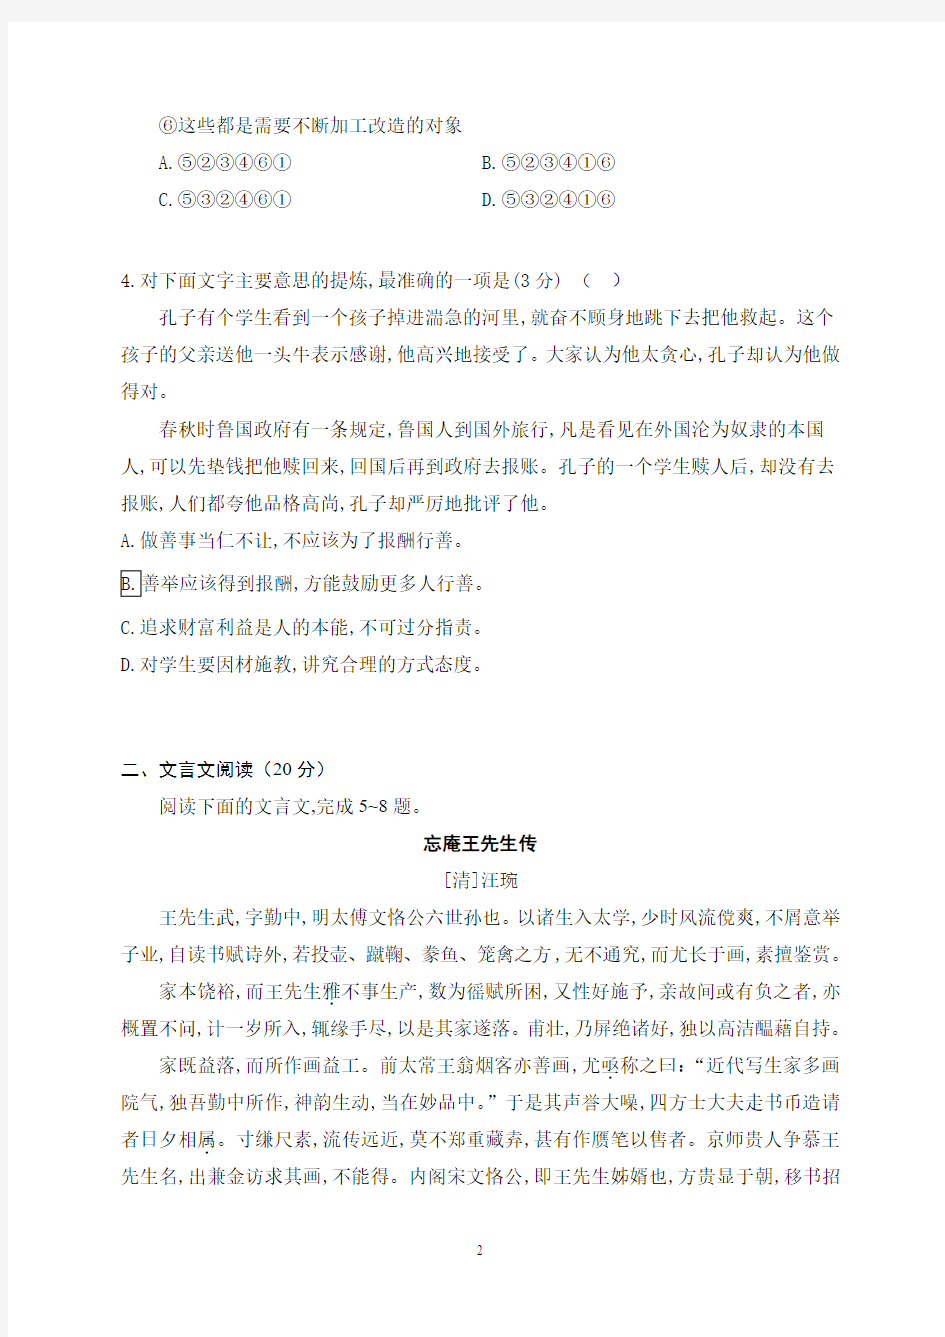 2019年12月江苏省天一中学2020届高三年级调研考试语文试题及答案解析